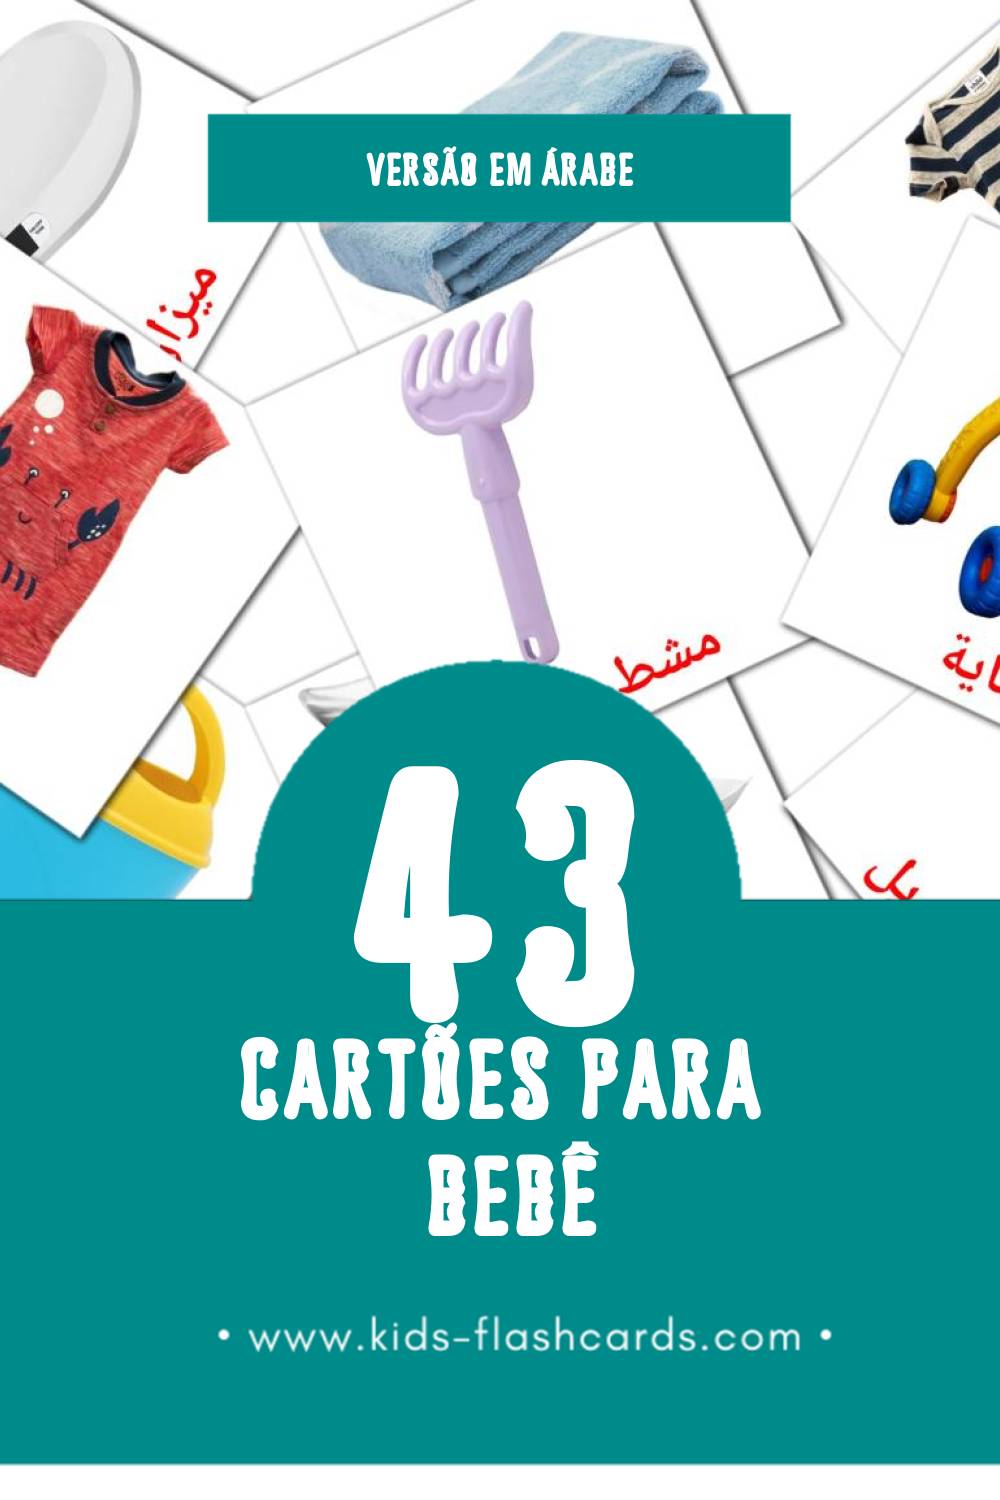 Flashcards de مولود Visuais para Toddlers (43 cartões em Árabe)